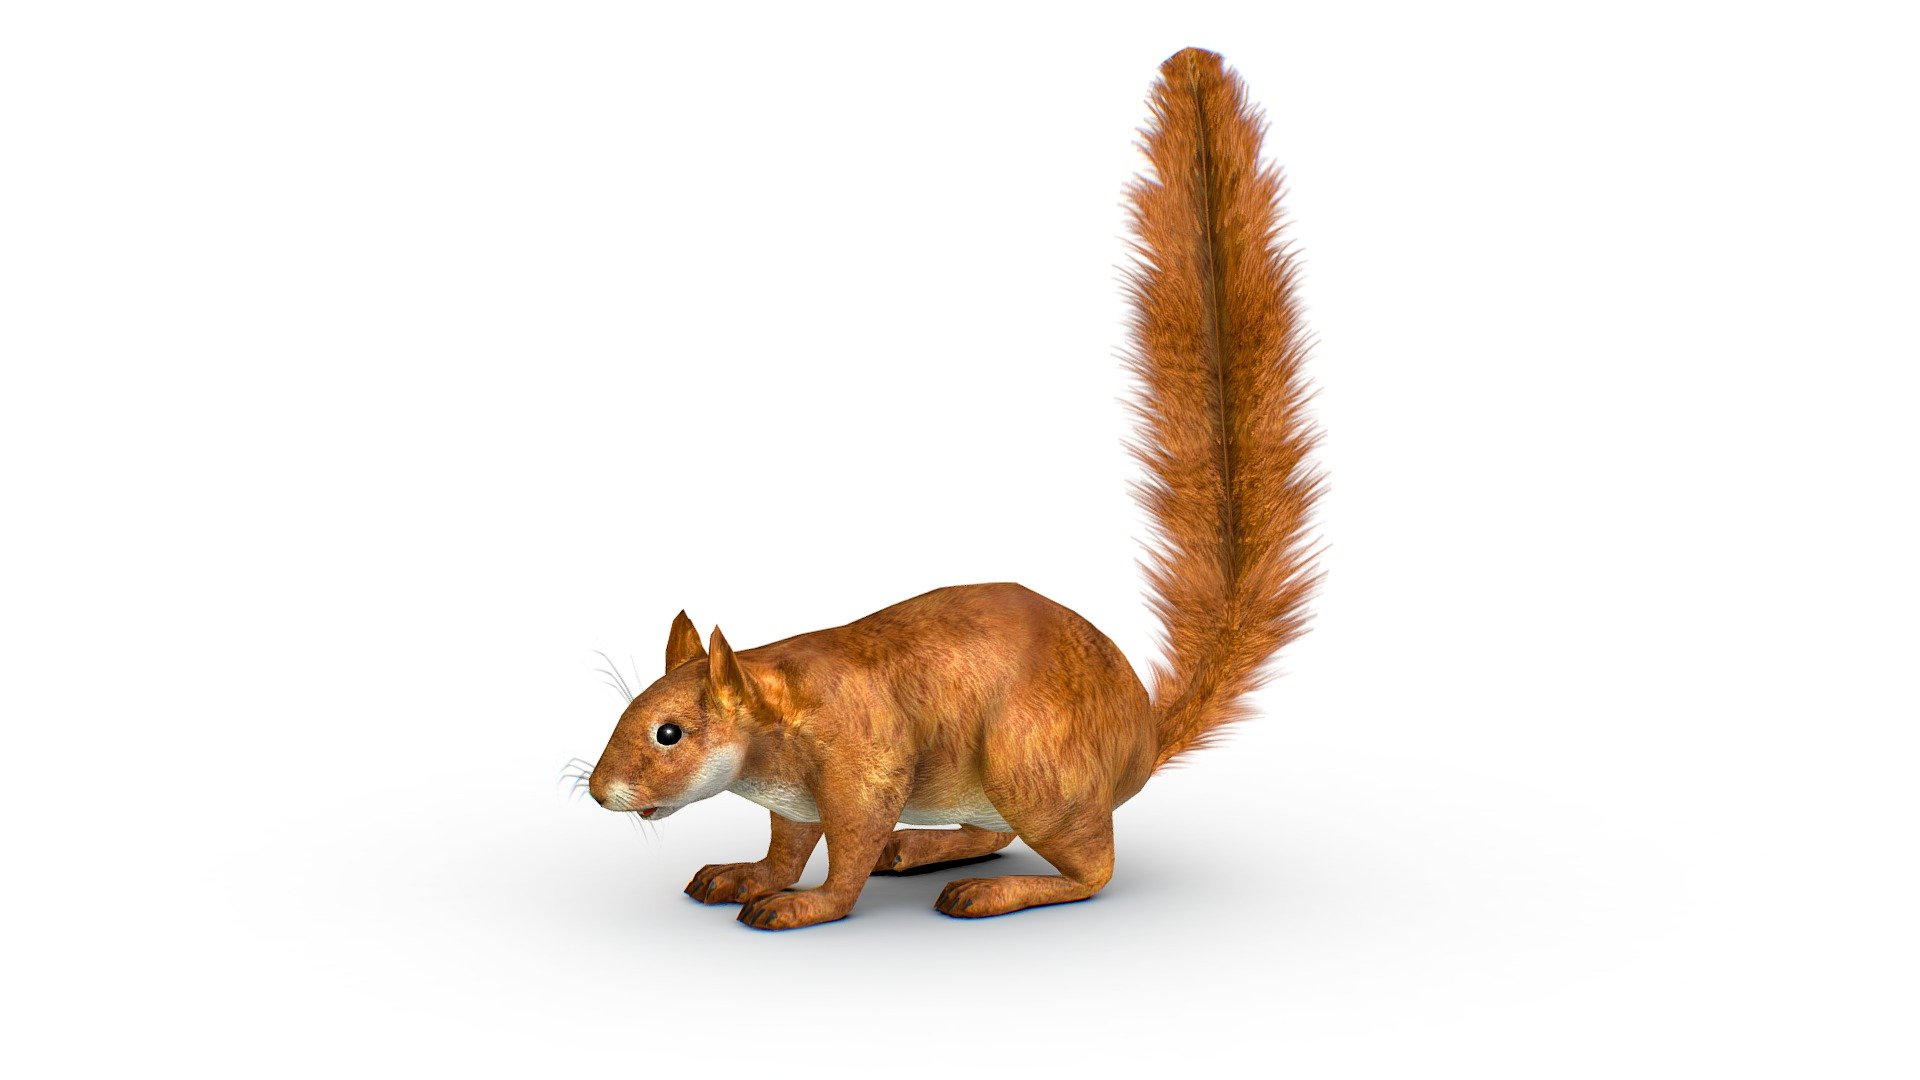 LowPoly Forest Wild Red Squirrel, 1024x1024 texture size (nirmal,difuse,specular) - LowPoly Forest Wild Red Squirrel - Buy Royalty Free 3D model by Oleg Shuldiakov (@olegshuldiakov) 3d model